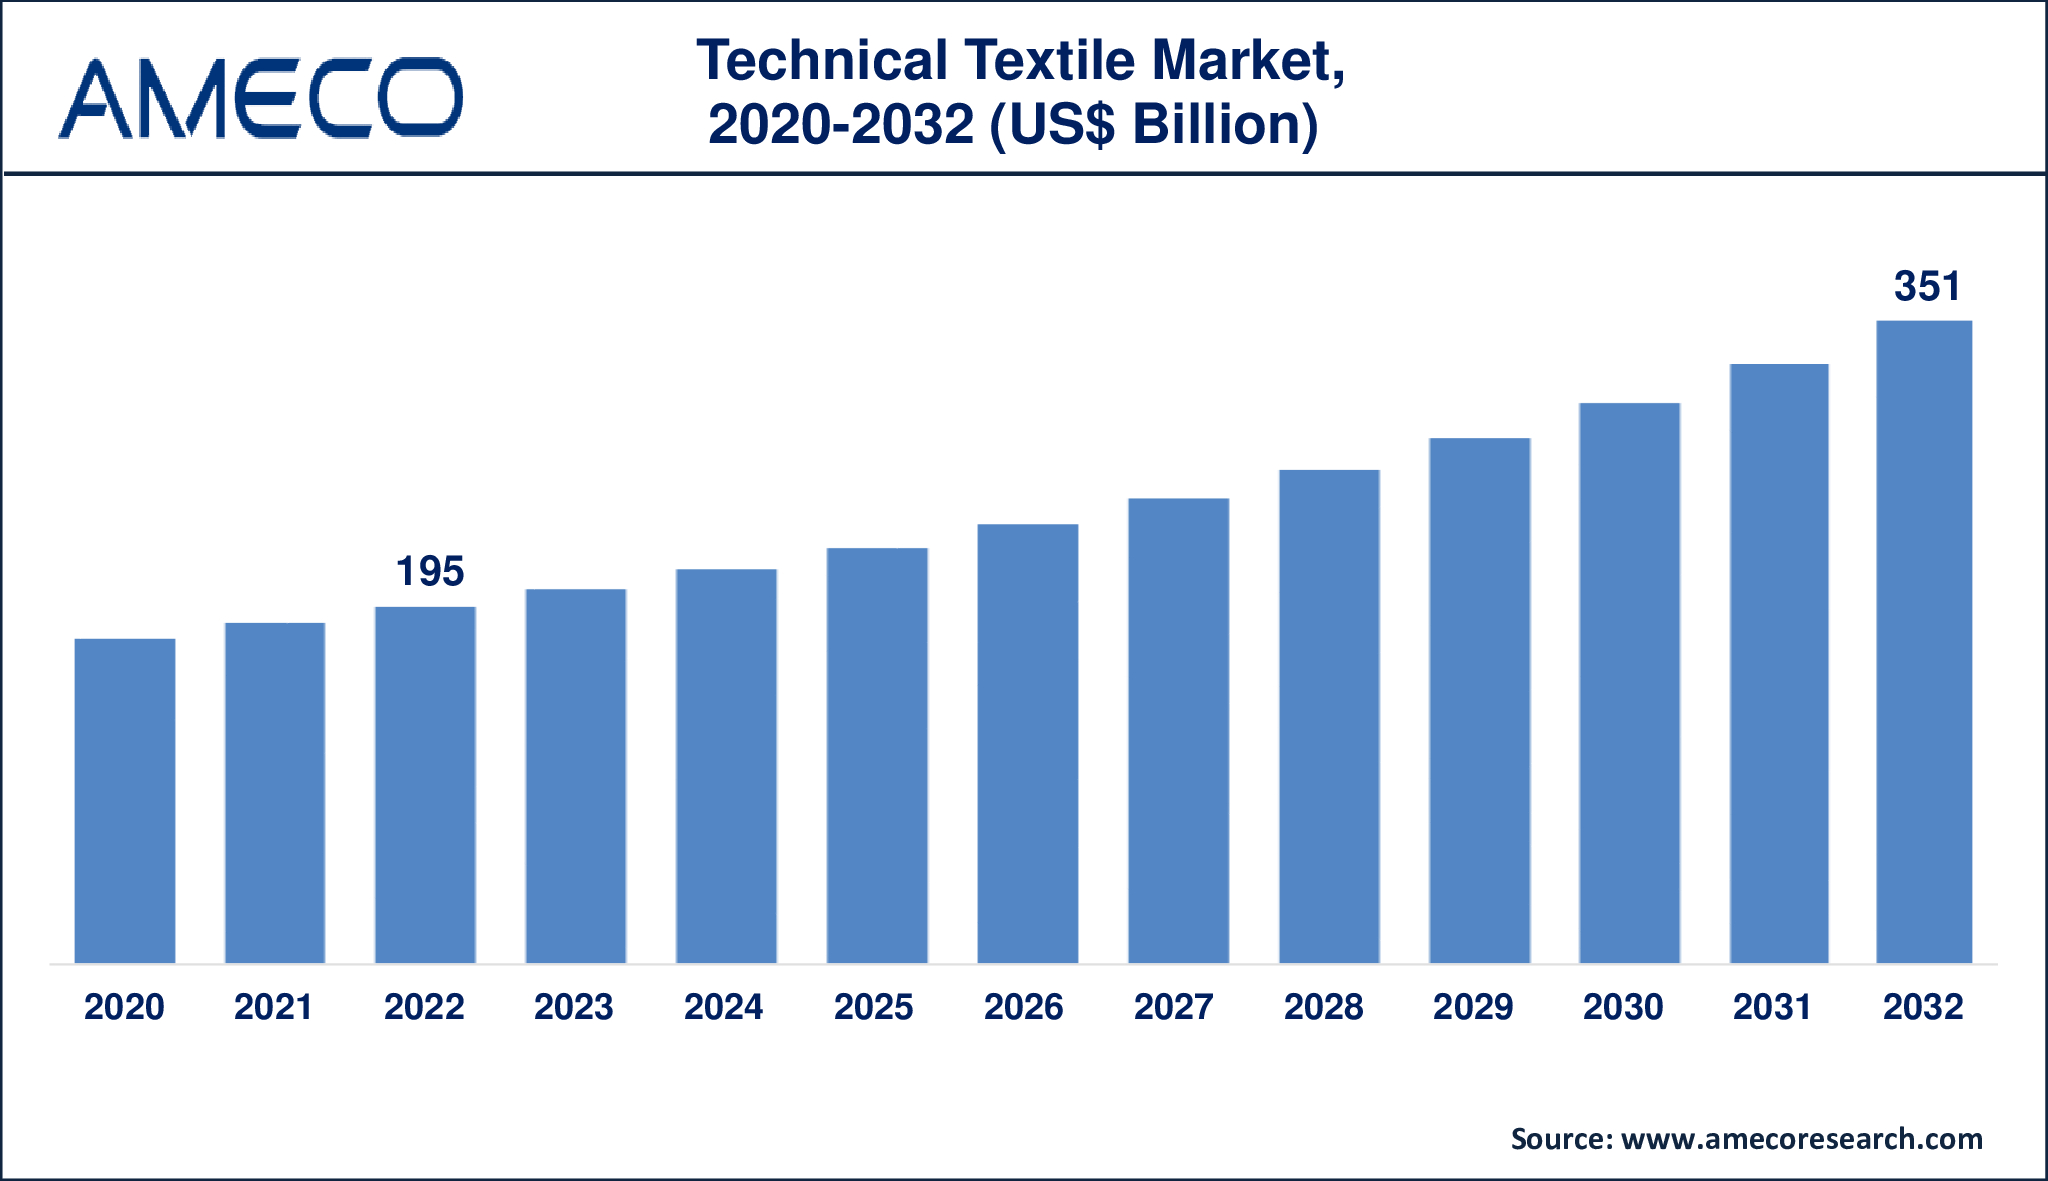 Technical Textile Market Dynamics